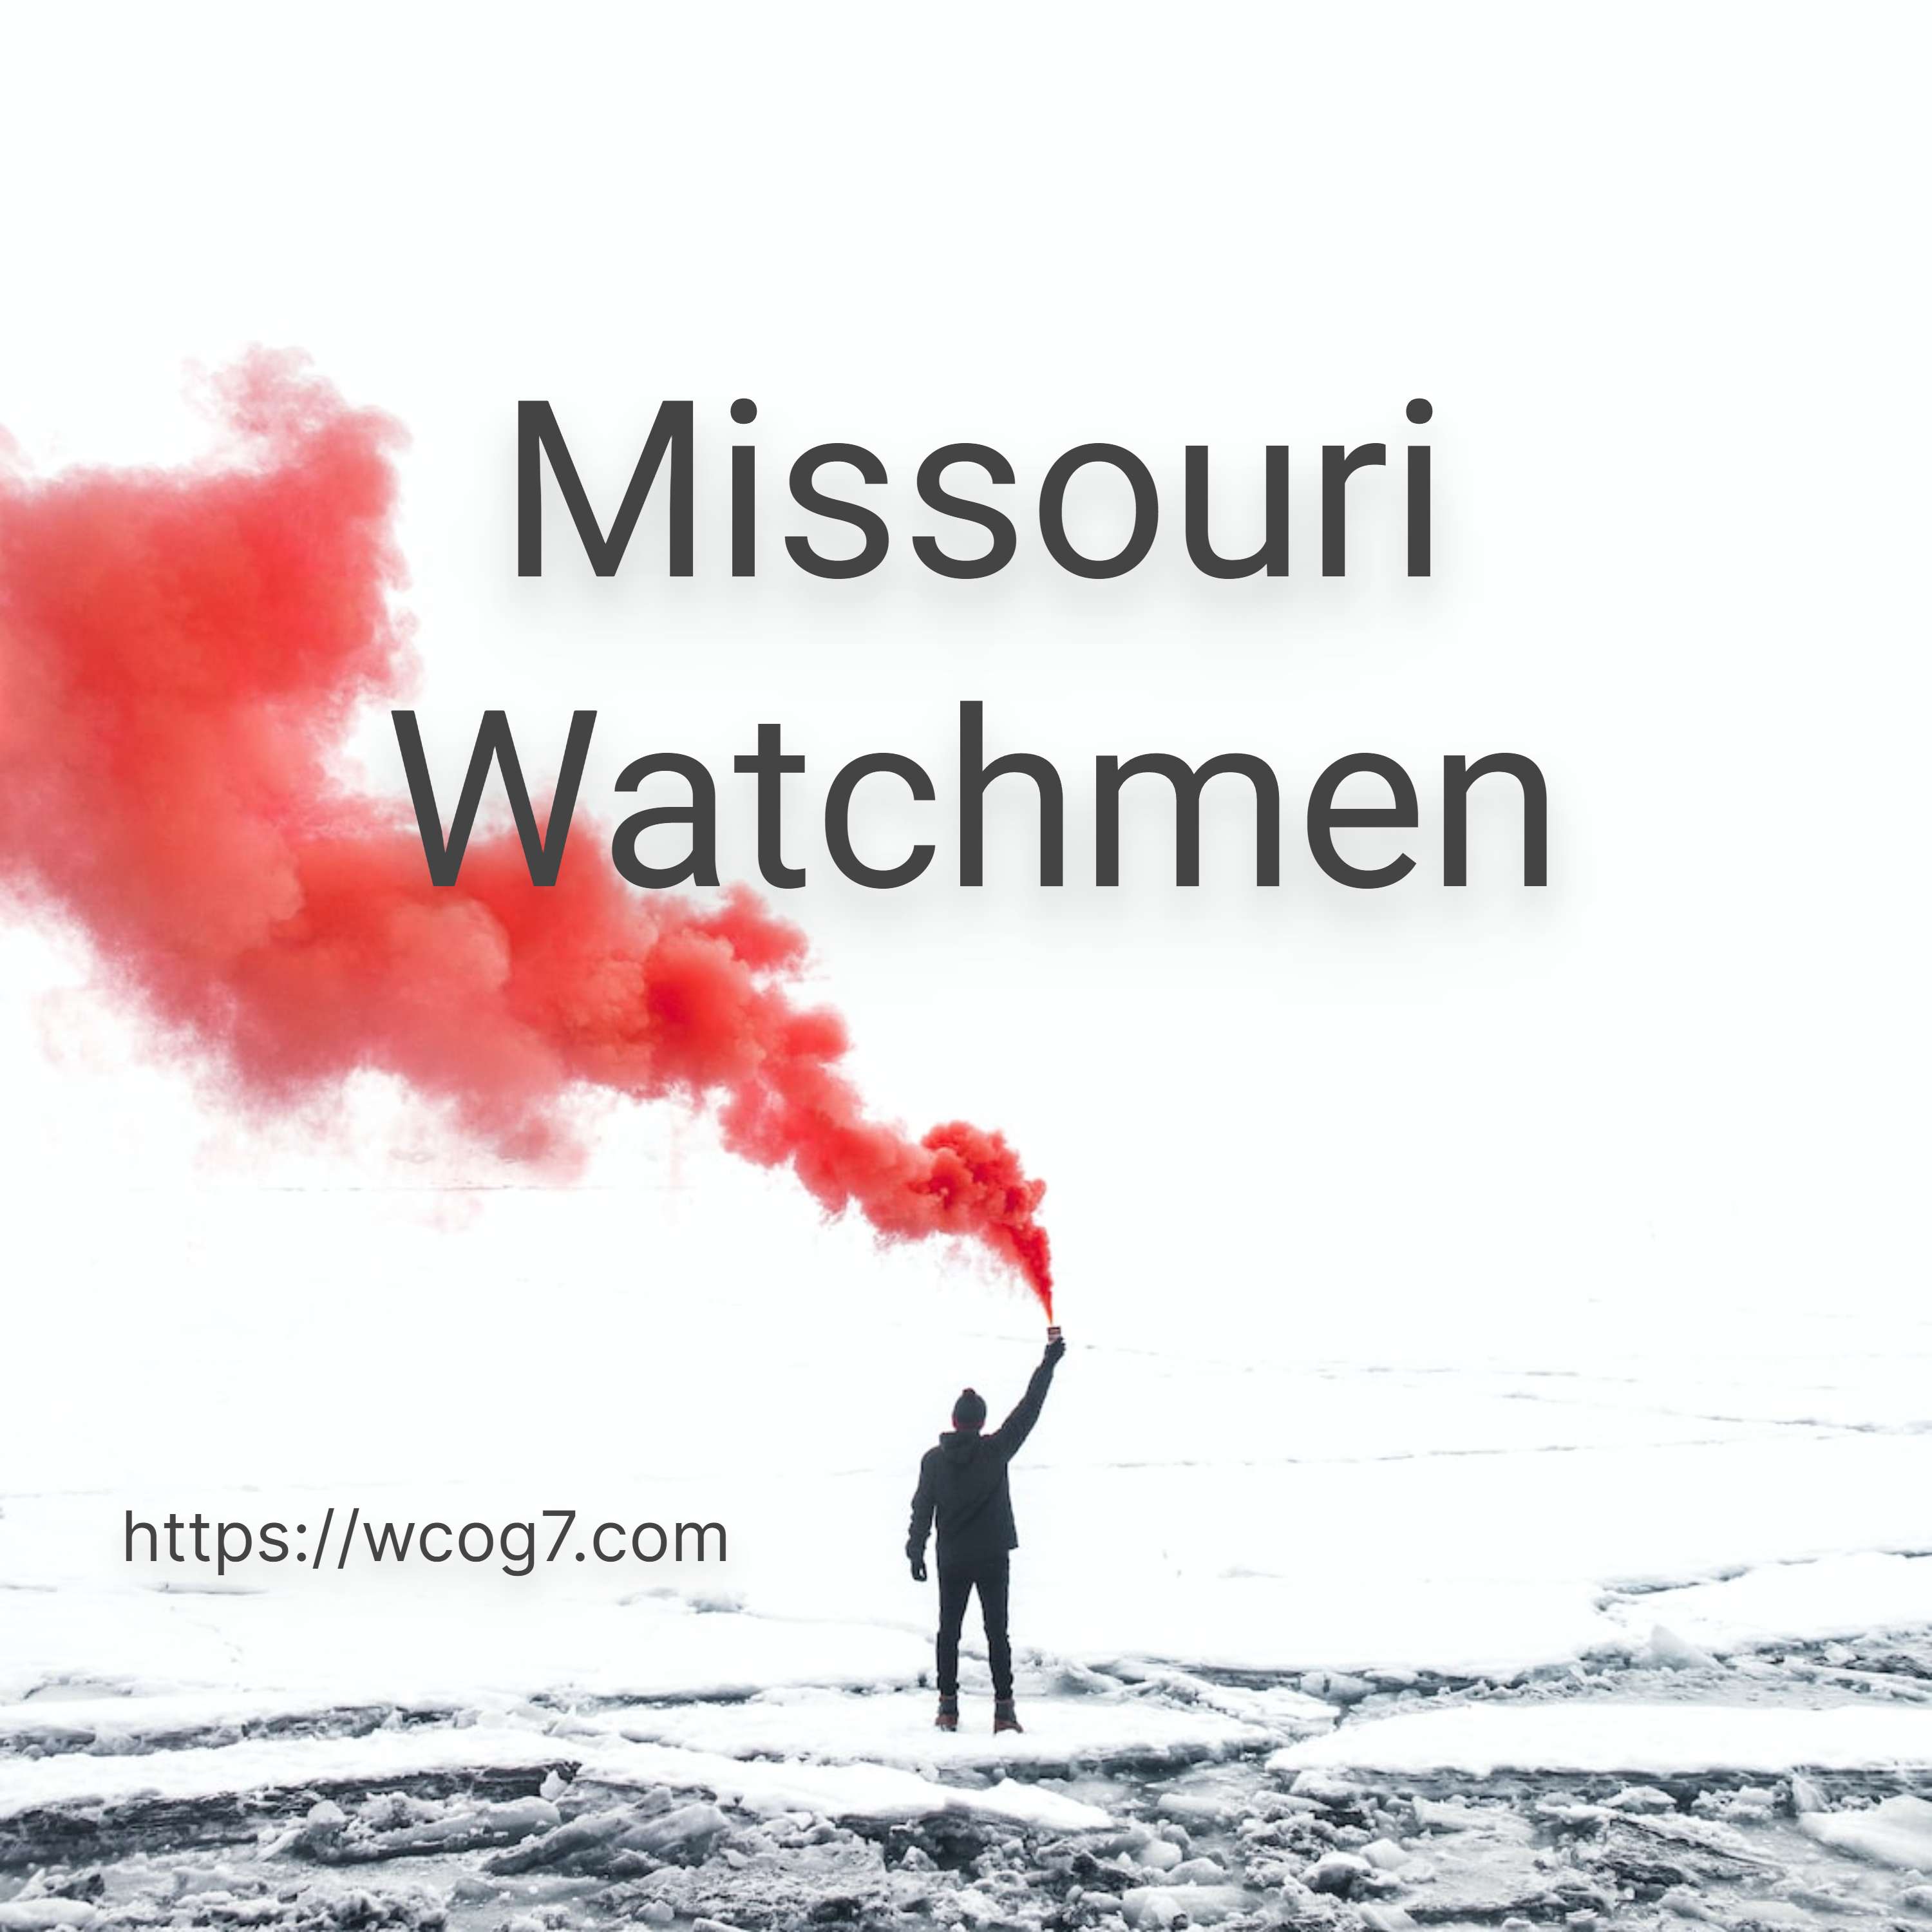 Missouri Watchmen